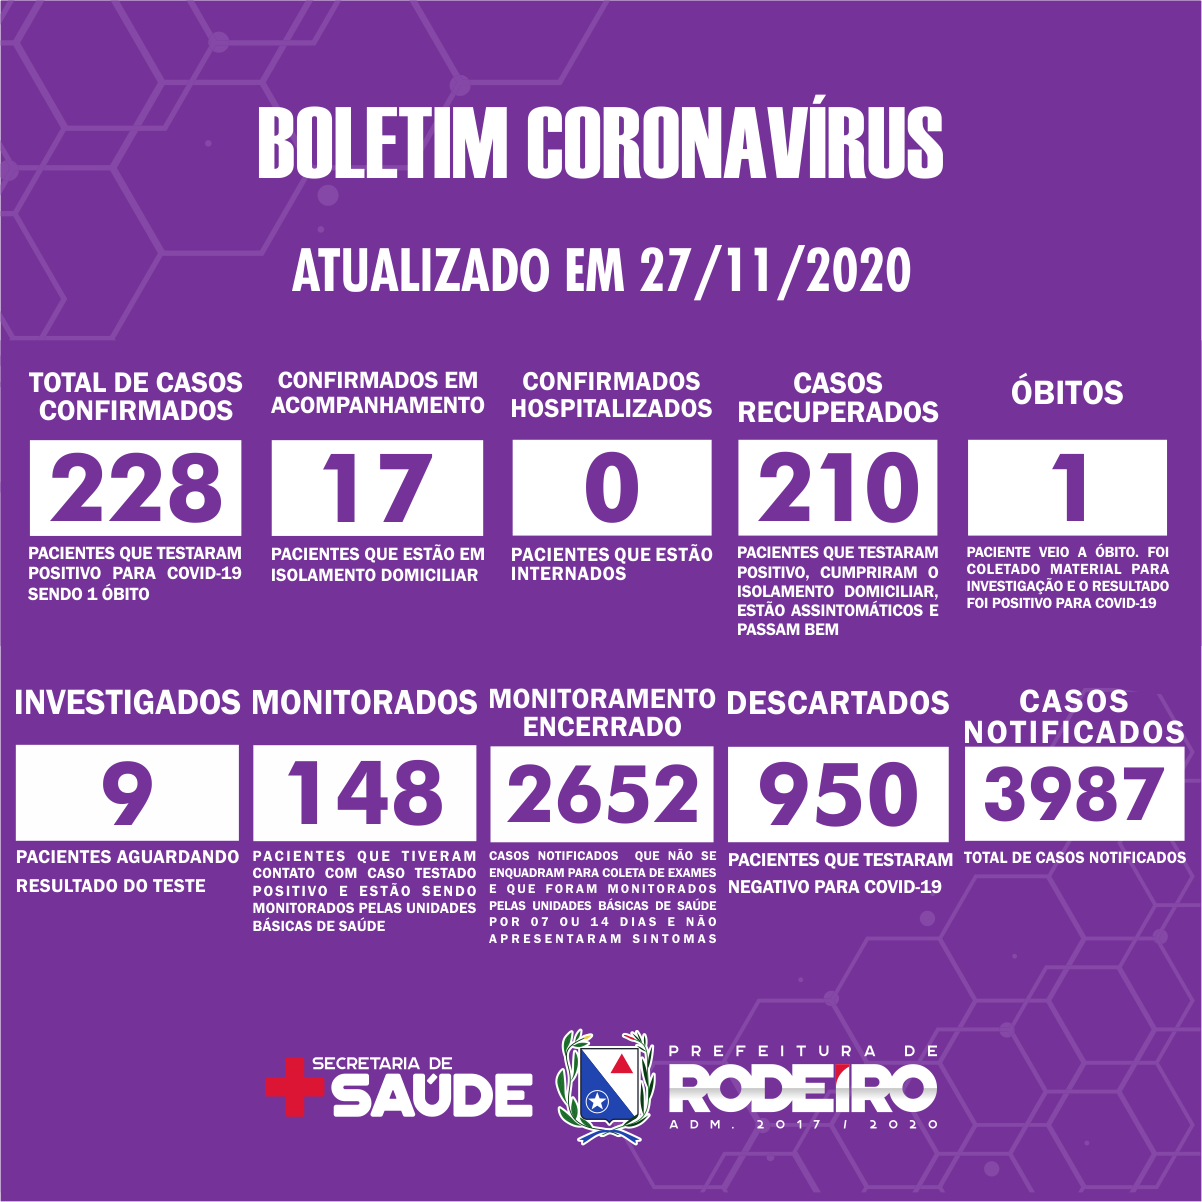 Boletim Epidemiológico do Município de Rodeiro sobre coronavírus, atualizado em 27/11/2020